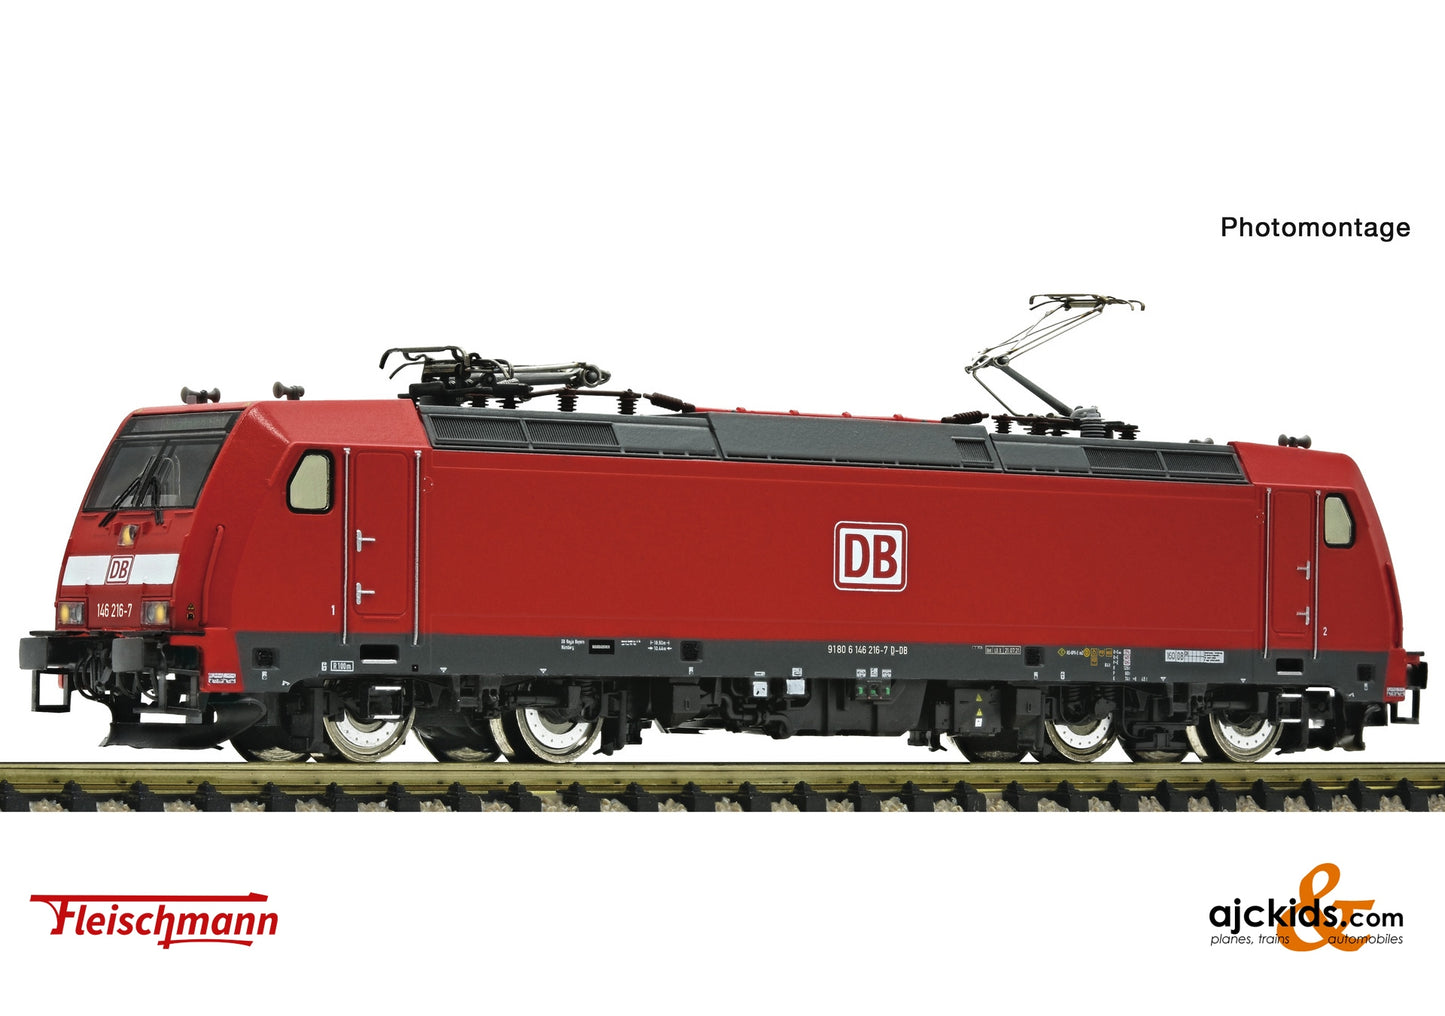 Fleischmann 7570008 - Electric locomotive class 146.2, DB AG at Ajckids.com